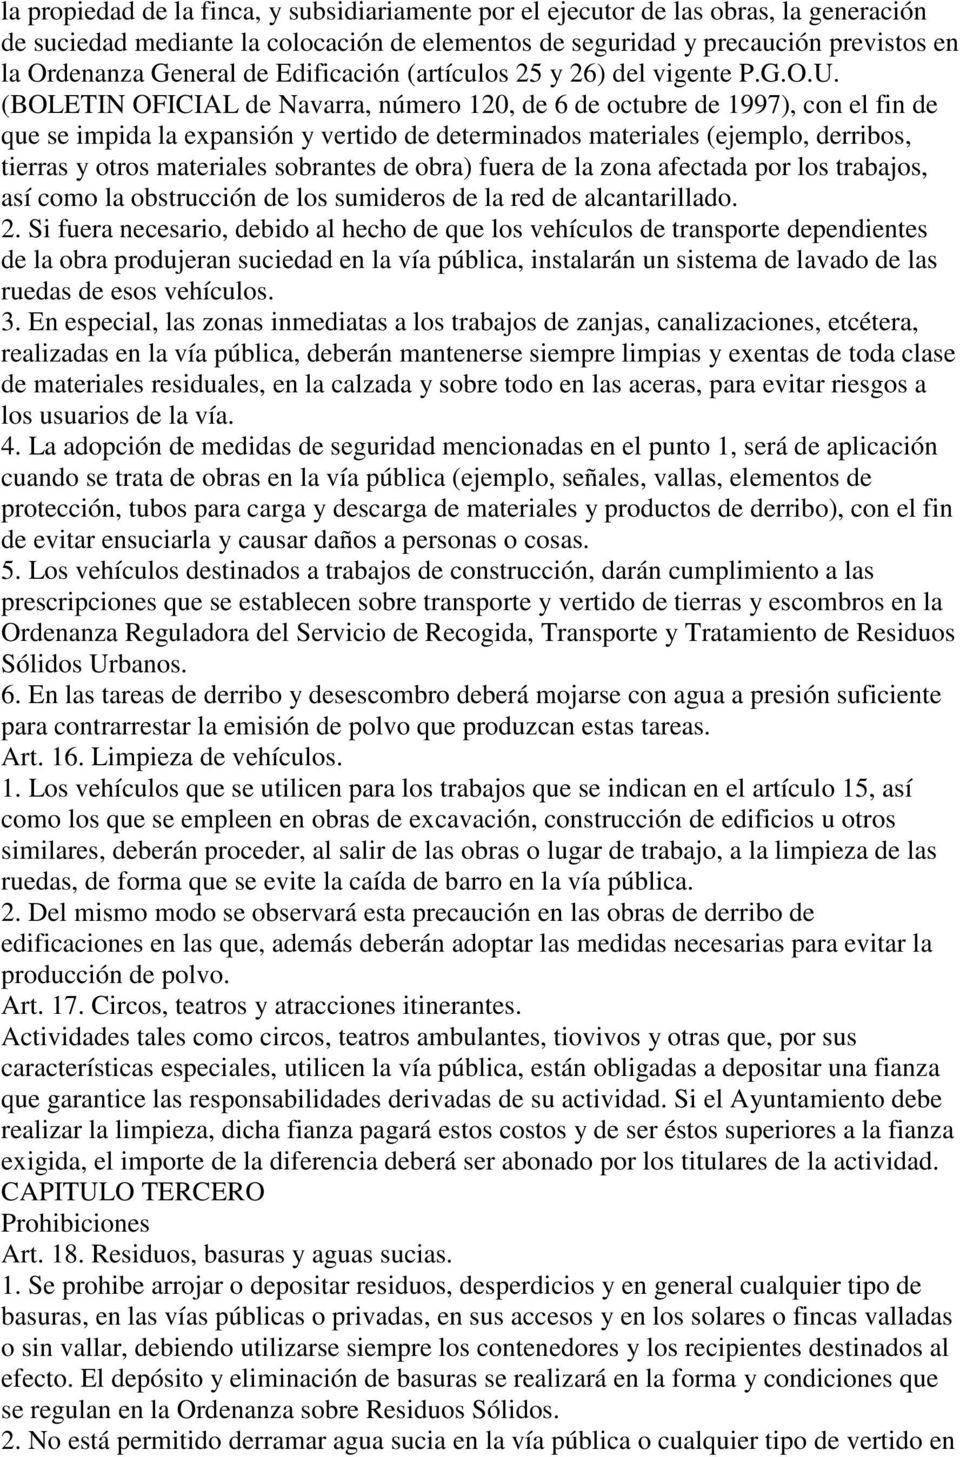 (BOLETIN OFICIAL de Navarra, número 120, de 6 de octubre de 1997), con el fin de que se impida la expansión y vertido de determinados materiales (ejemplo, derribos, tierras y otros materiales